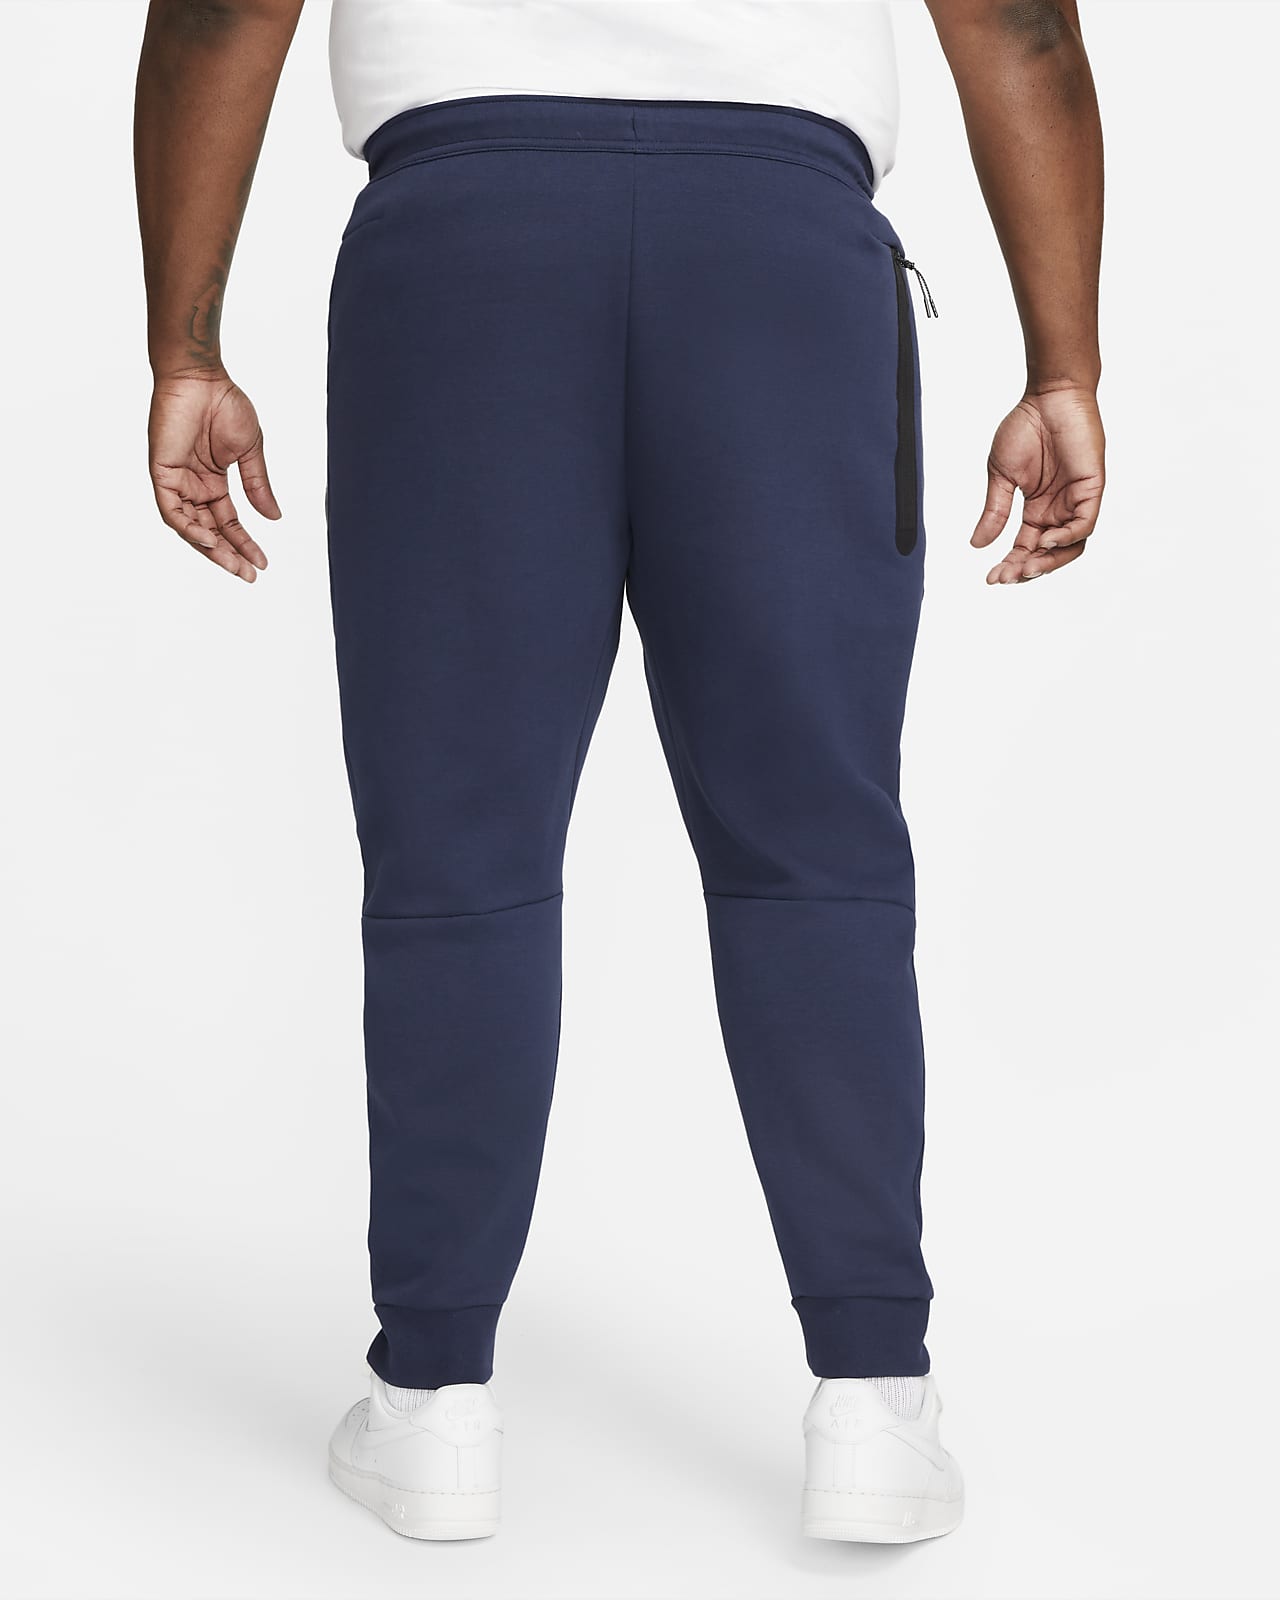 Nike Size 3XL 3XL-Tall Sportswear Tech Fleece Men's Joggers Pants